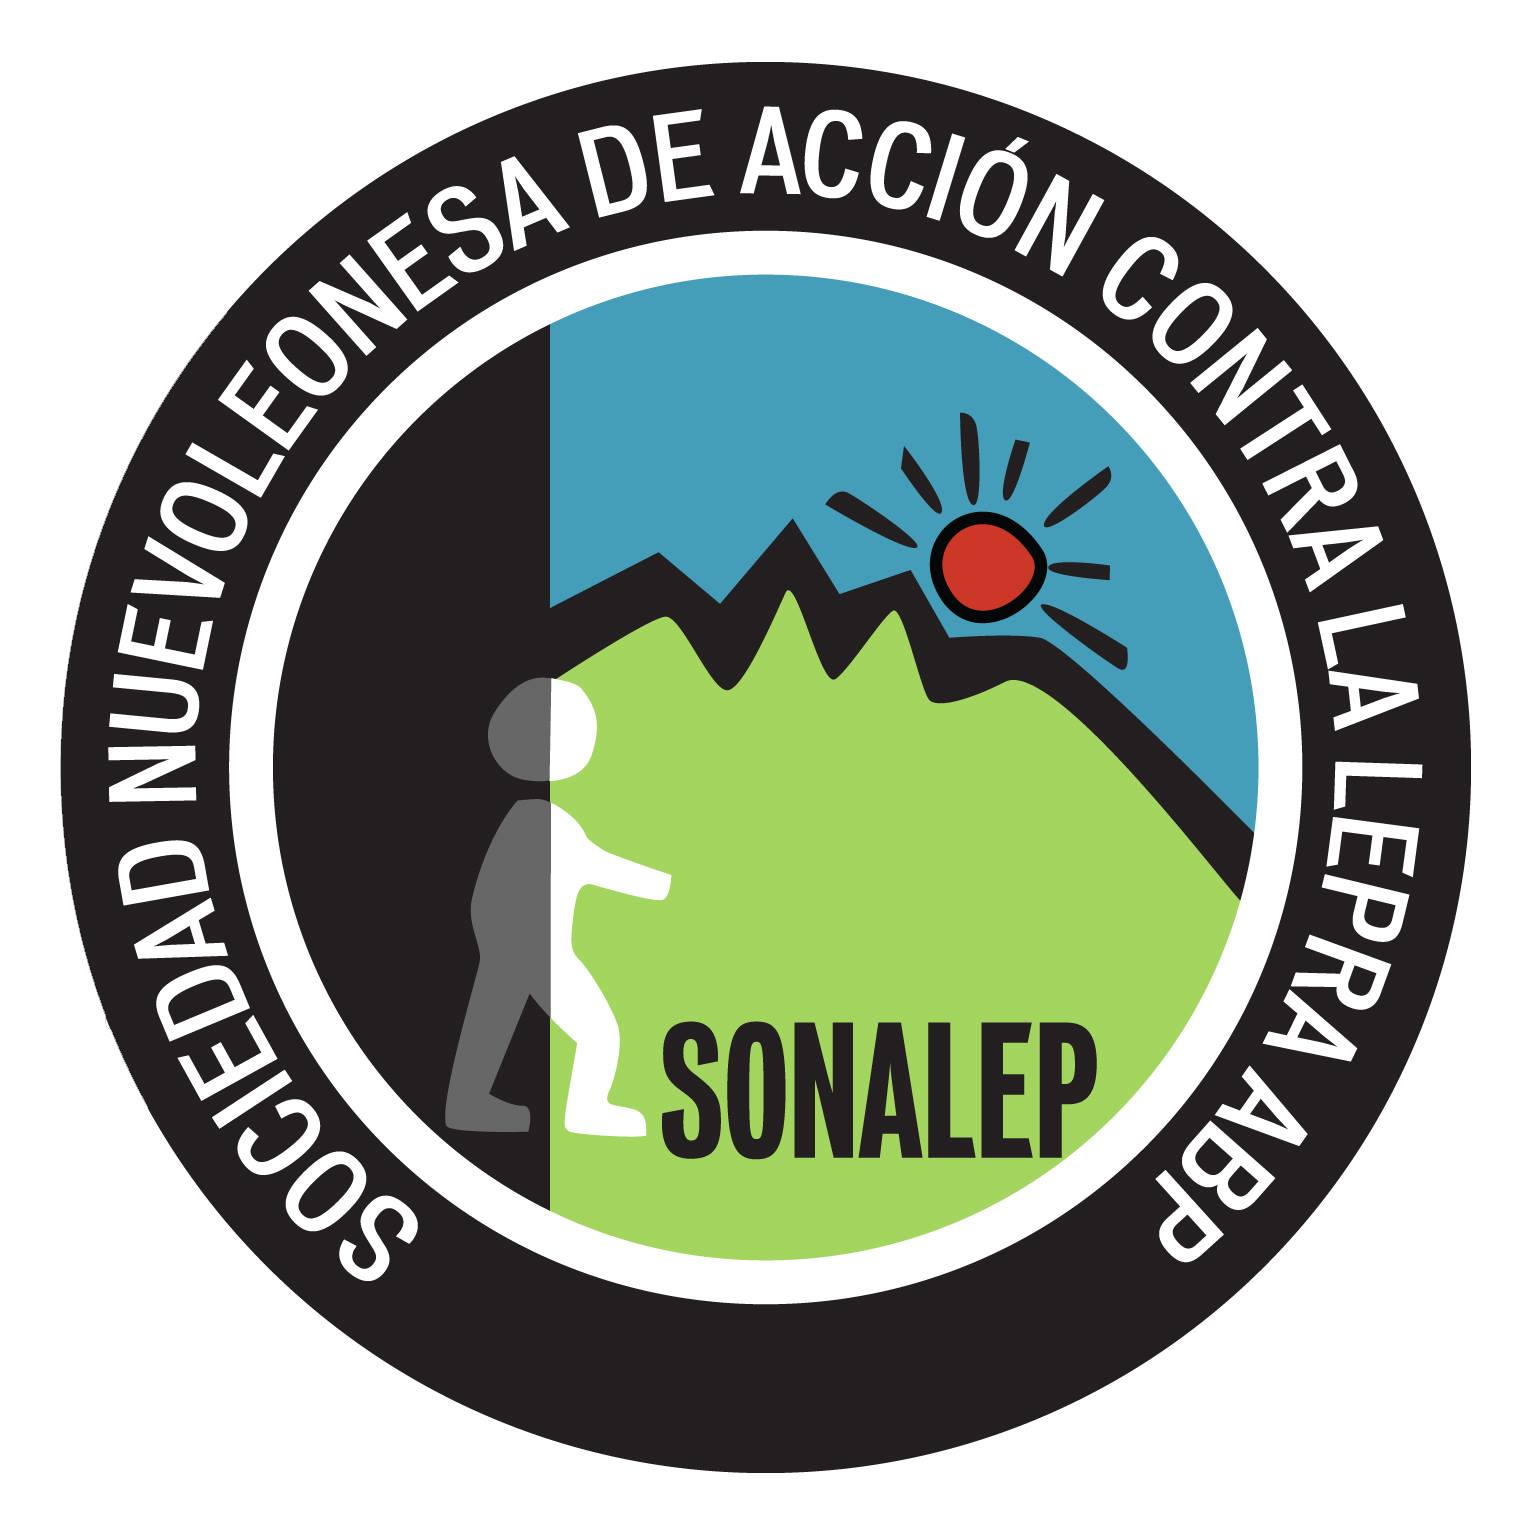 SONALEP, la Sociedad de Acción contra la lepra